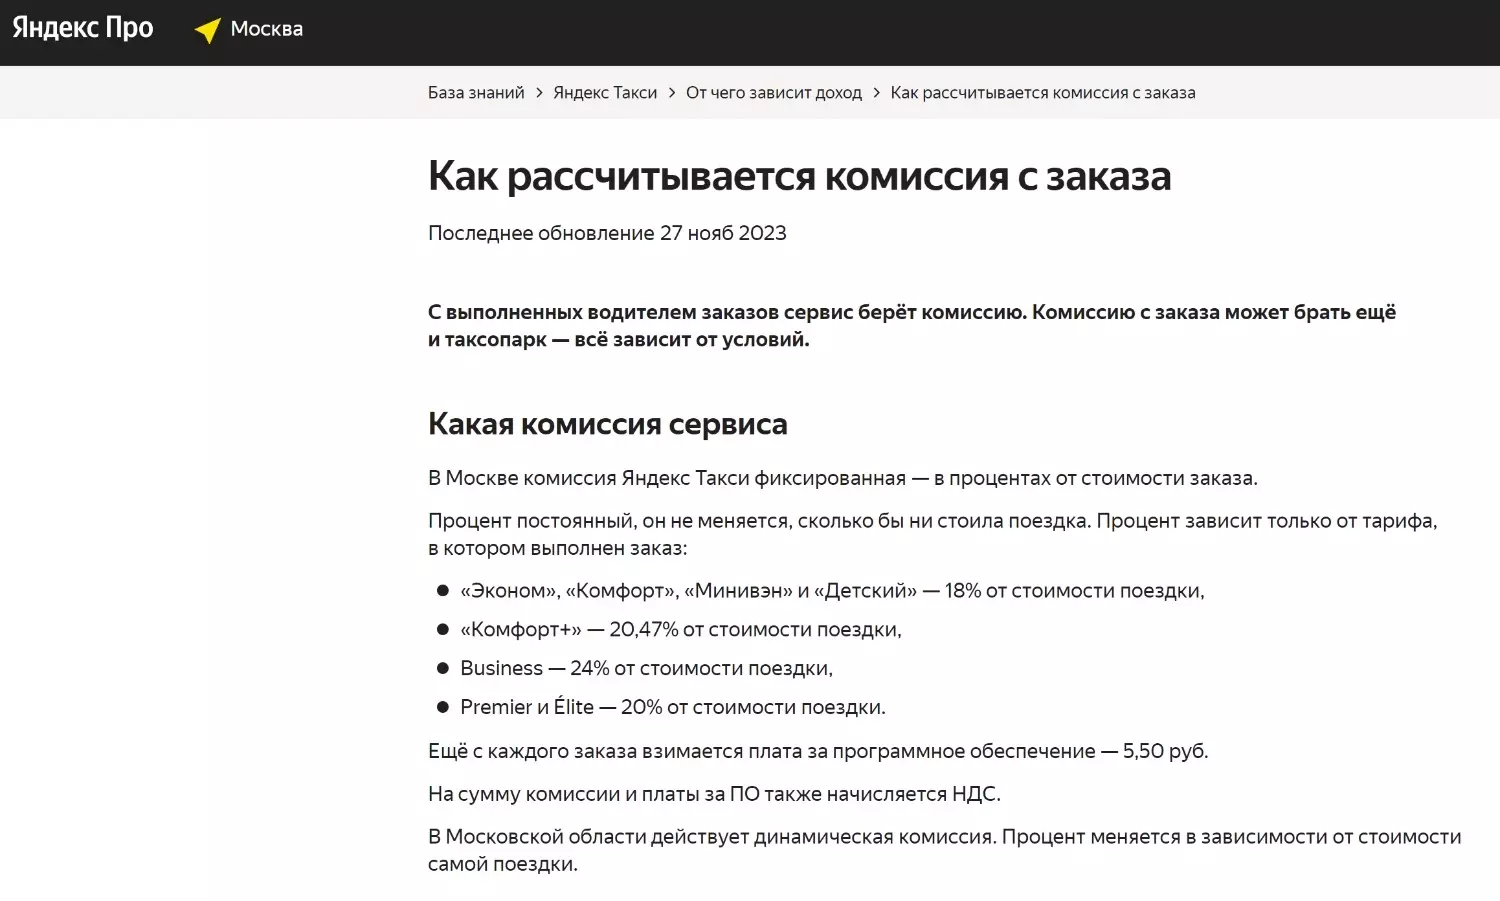 «Яндекс Такси» берёт 18-24% от стоимости каждой поездки